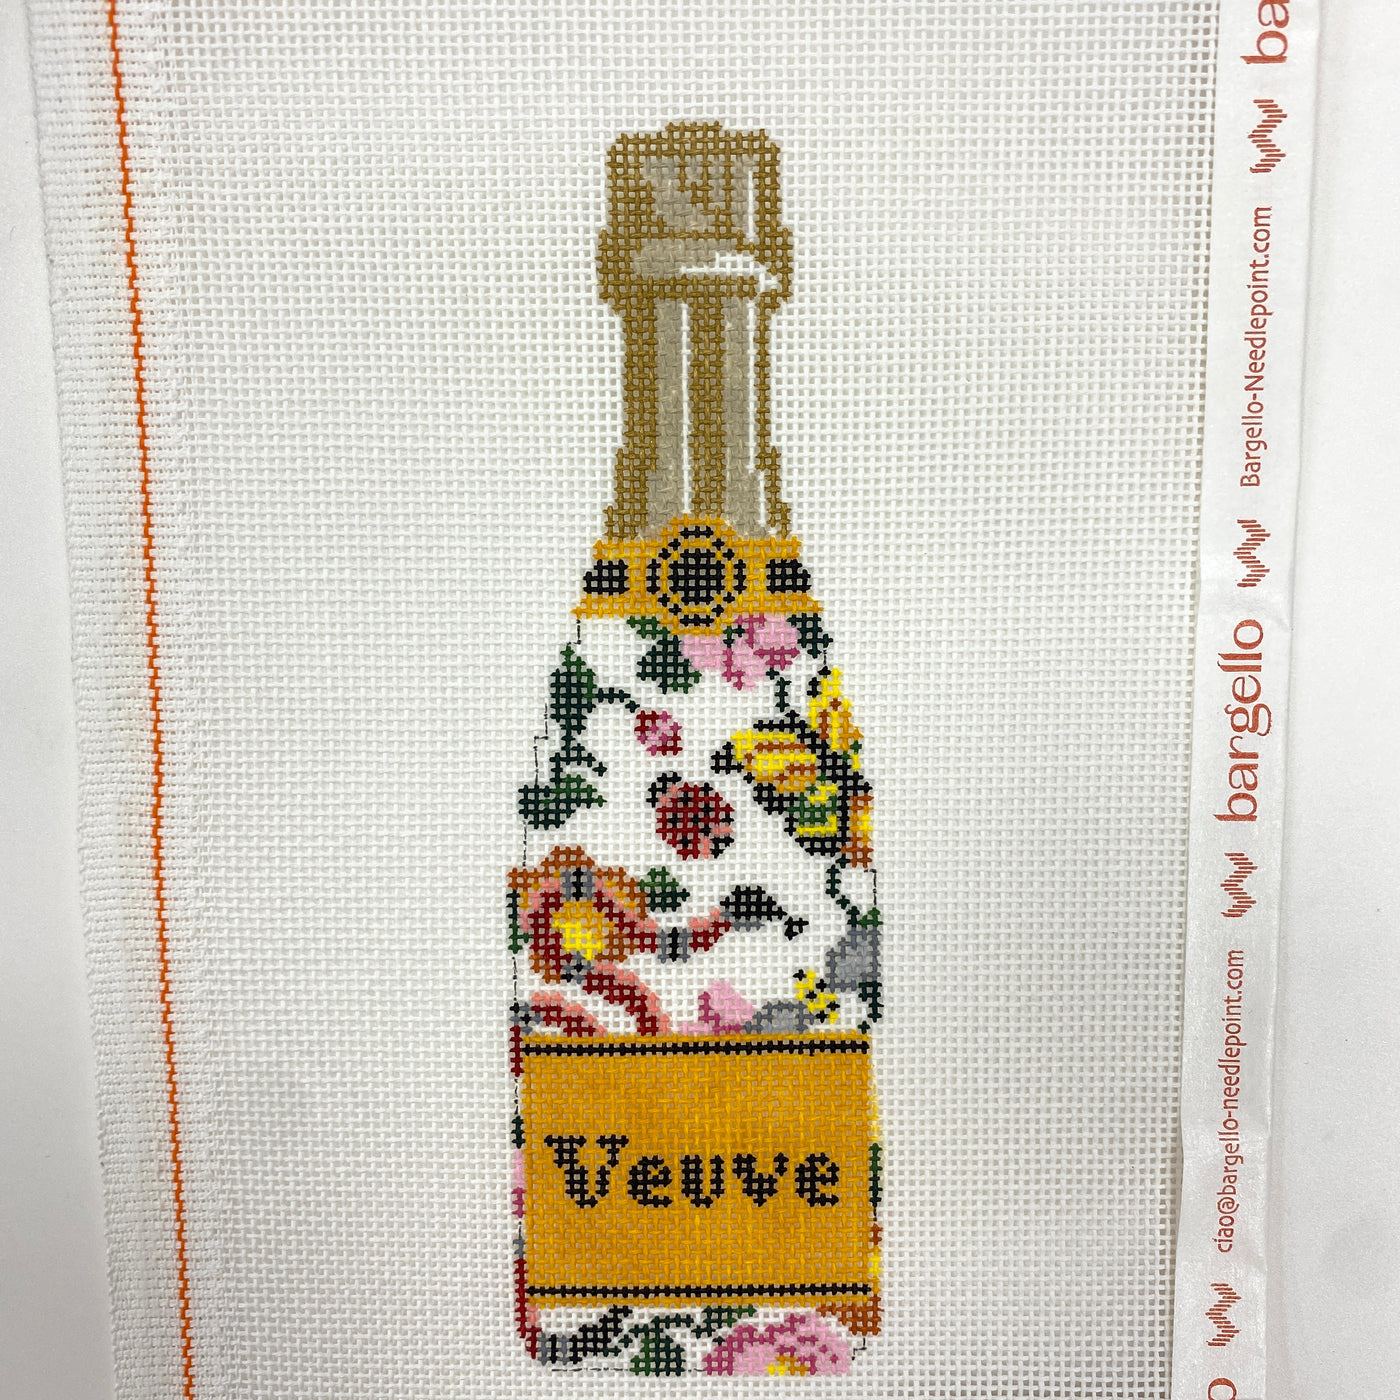 Veuve Bottle - Guch Garden Needlepoint Canvas